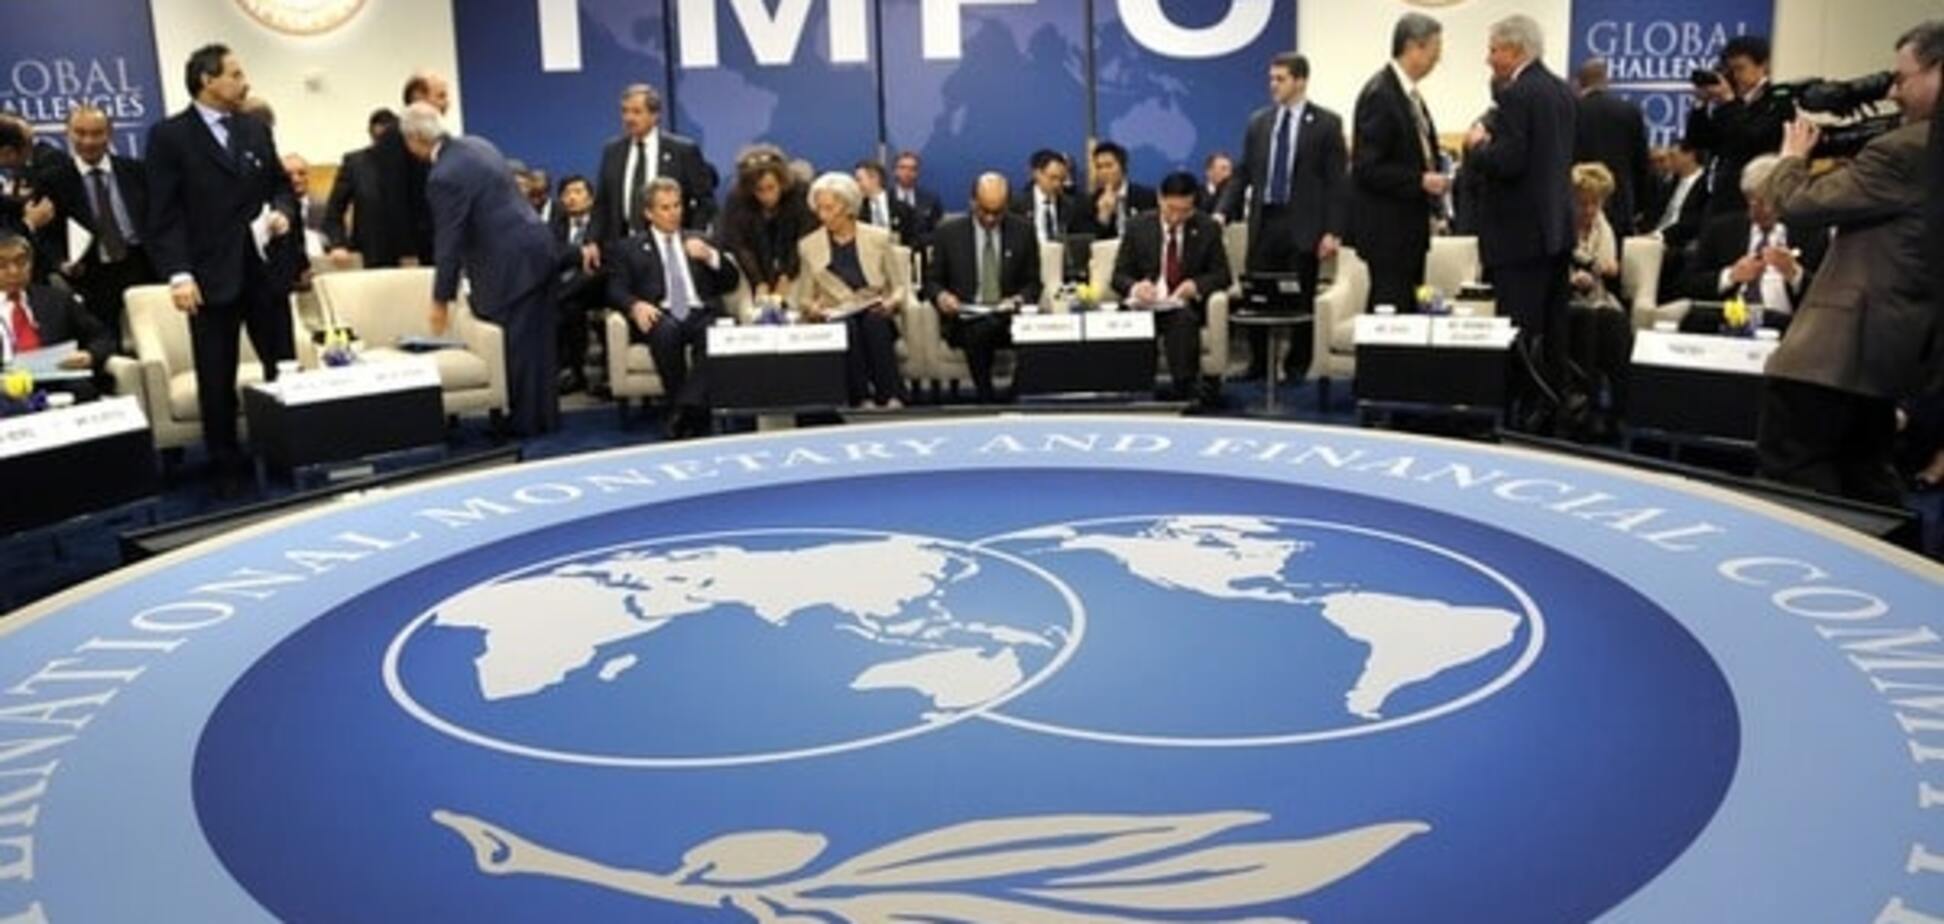 МВФ рассказал, будет ли работать с Украиной и чего от нее ждет